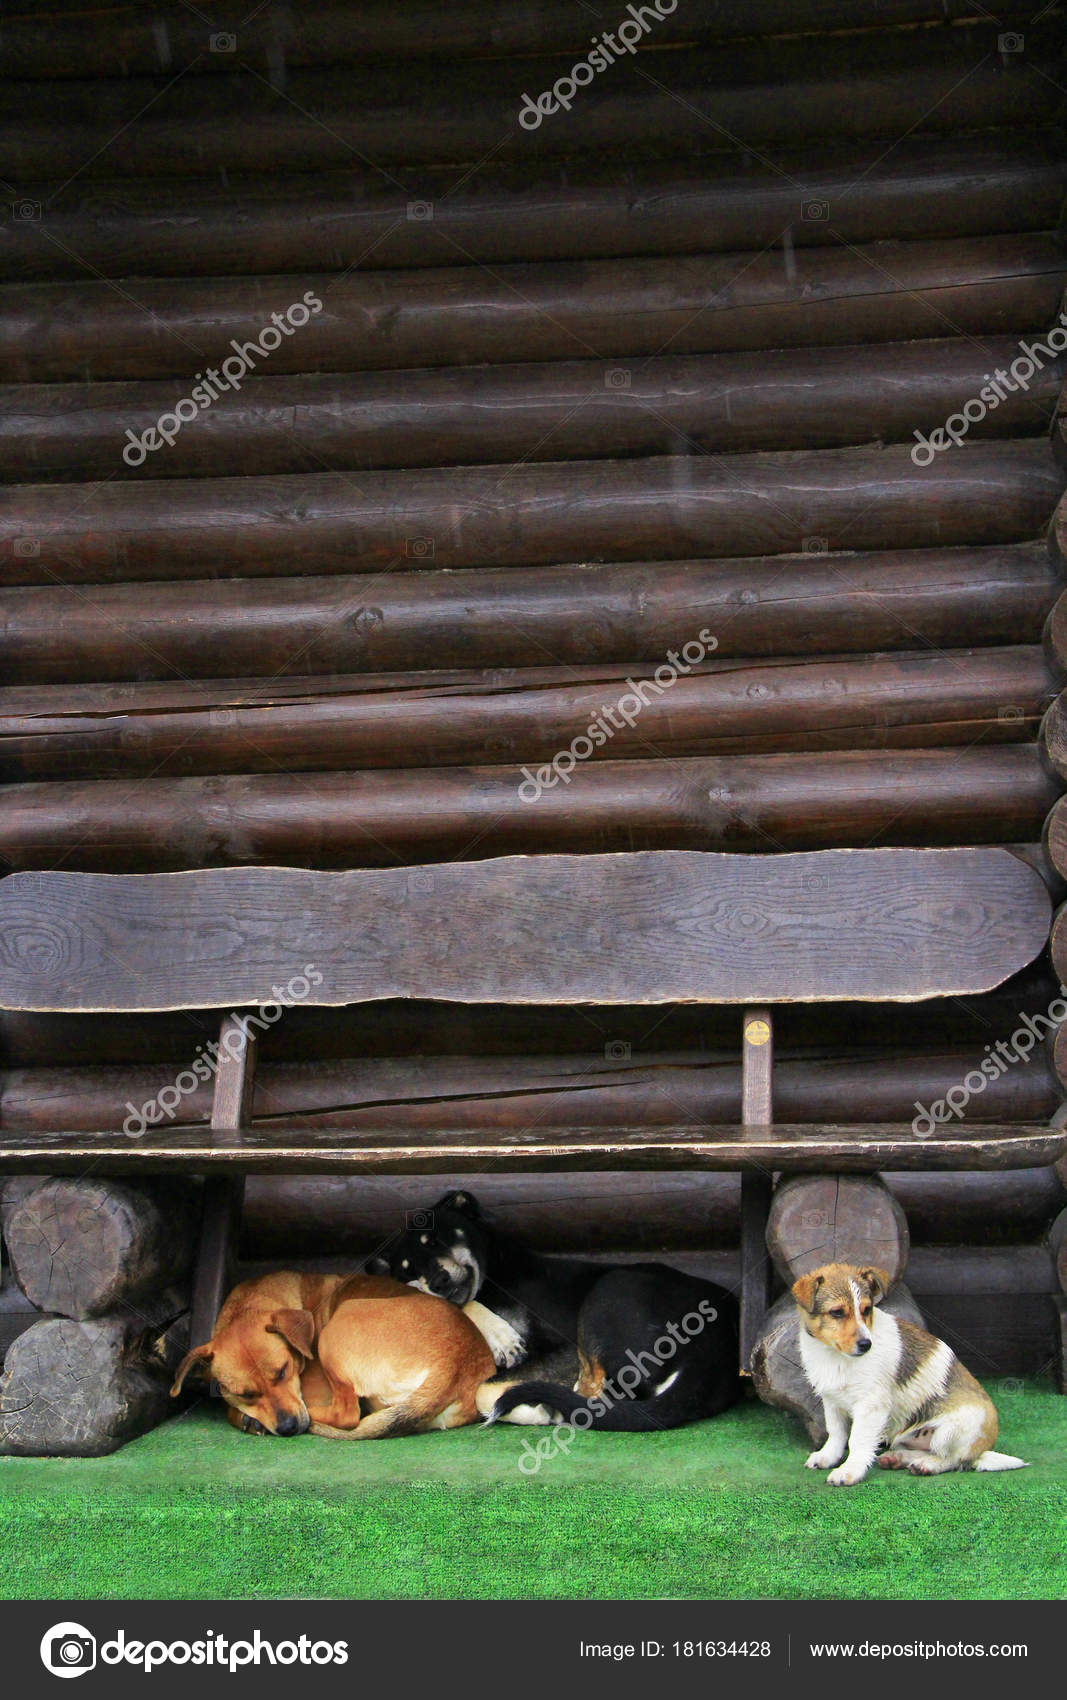 Retrato De Dos Perros Chihuahua De Pelo Corto De Diferentes Tamaños  Sentados En Una Casa De Perro De Madera, Sonriendo Con La Lengua Fuera Y  Mirando La Cámara. Fotos, retratos, imágenes y